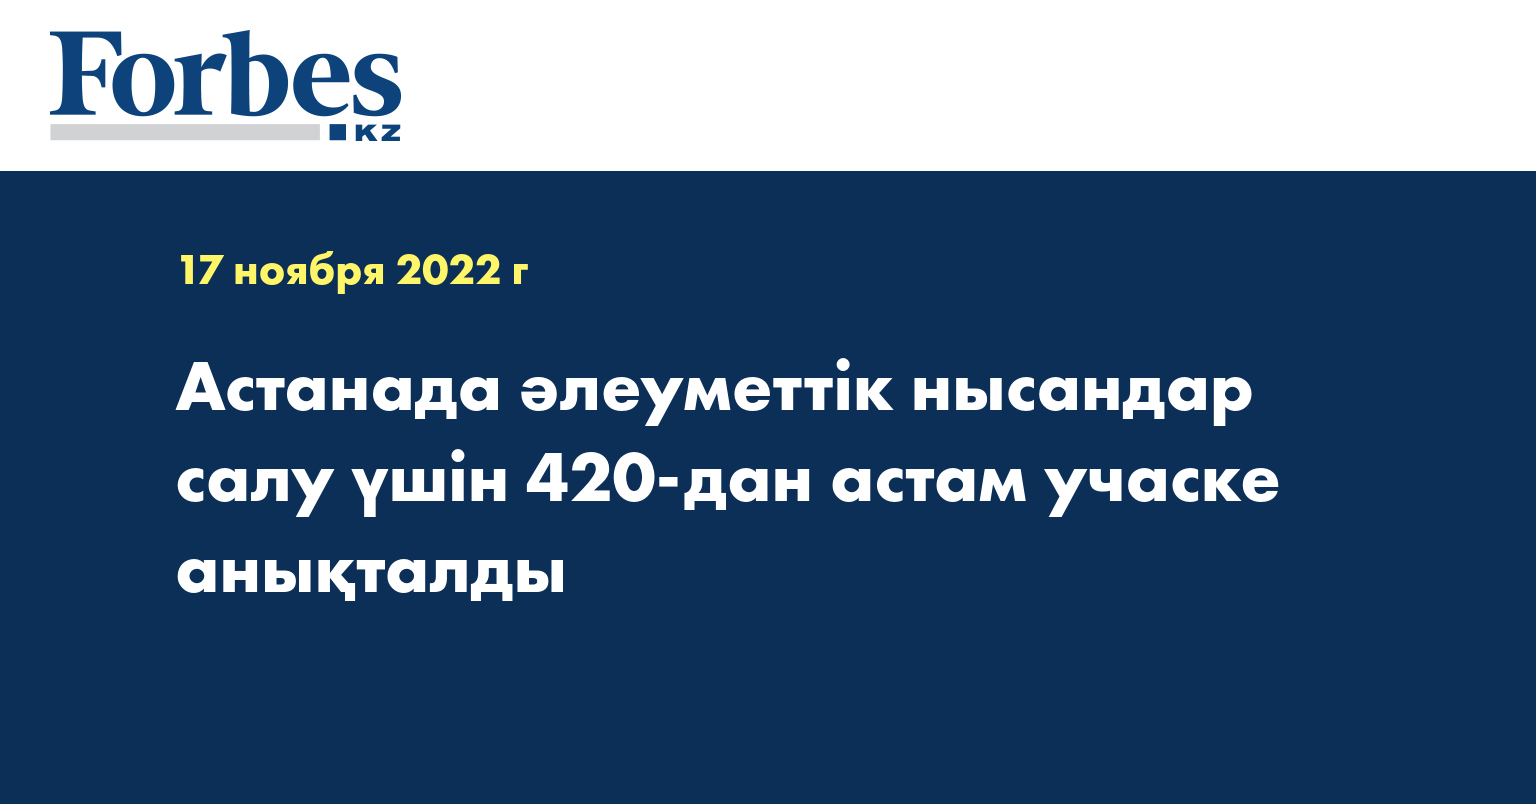 Астанада әлеуметтік нысандар салу үшін 420-дан астам учаске анықталды